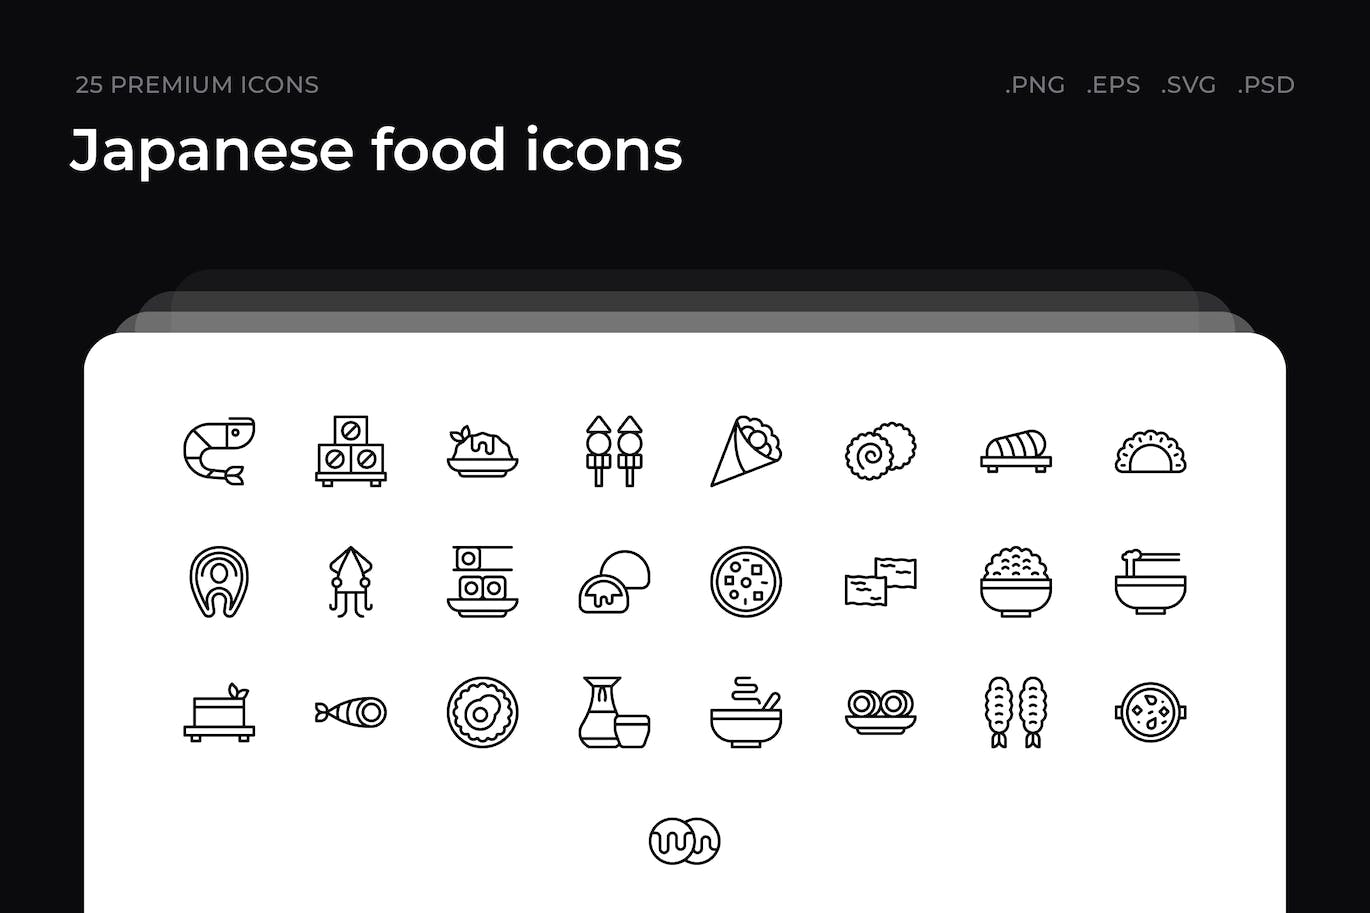 25枚日本食品主题简约线条矢量图标 Japanese food icons 图标素材 第1张